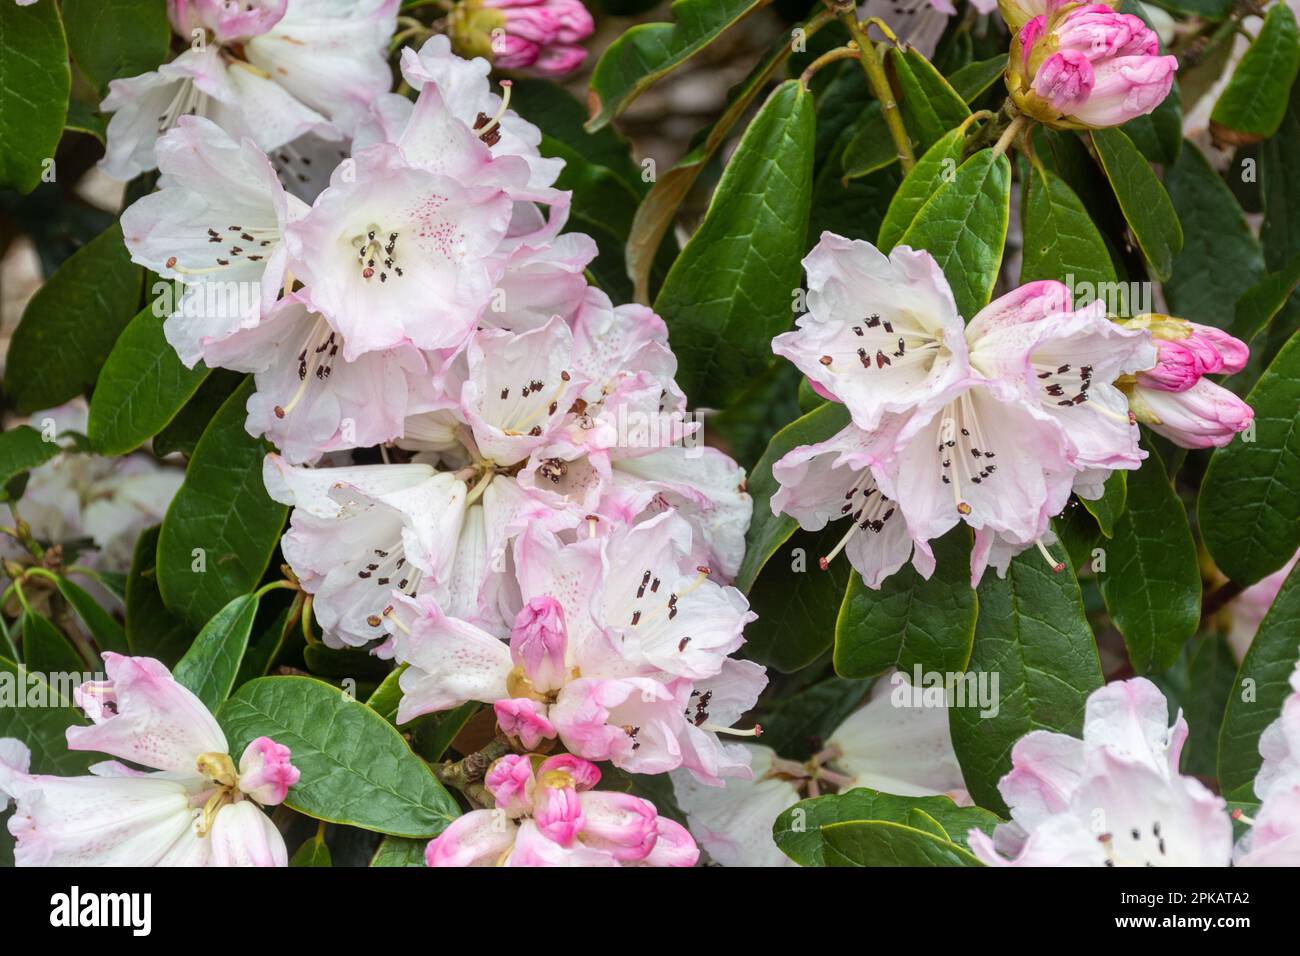 Rosafarbene und weiße gepunktete Blüten oder Blüten von Rhododendron coeloneuron ssp. Coeloneuron (Unterabschnitt Taliensia) blüht im Frühling, Großbritannien Stockfoto